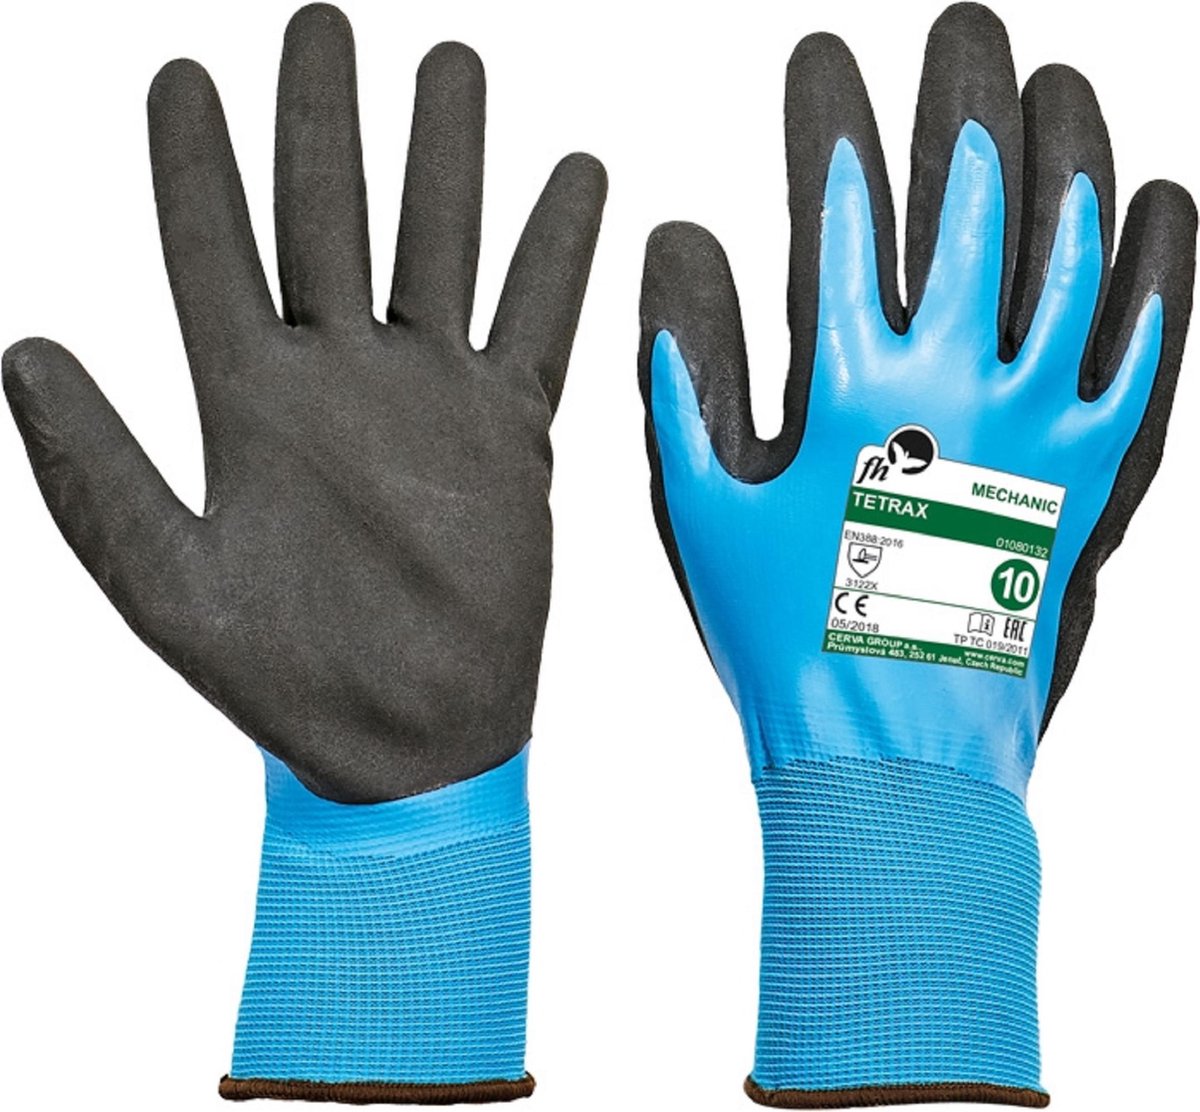 Vloeistofdichte gevoerde handschoen Tetrax waterdicht 10/XL - 6 paar